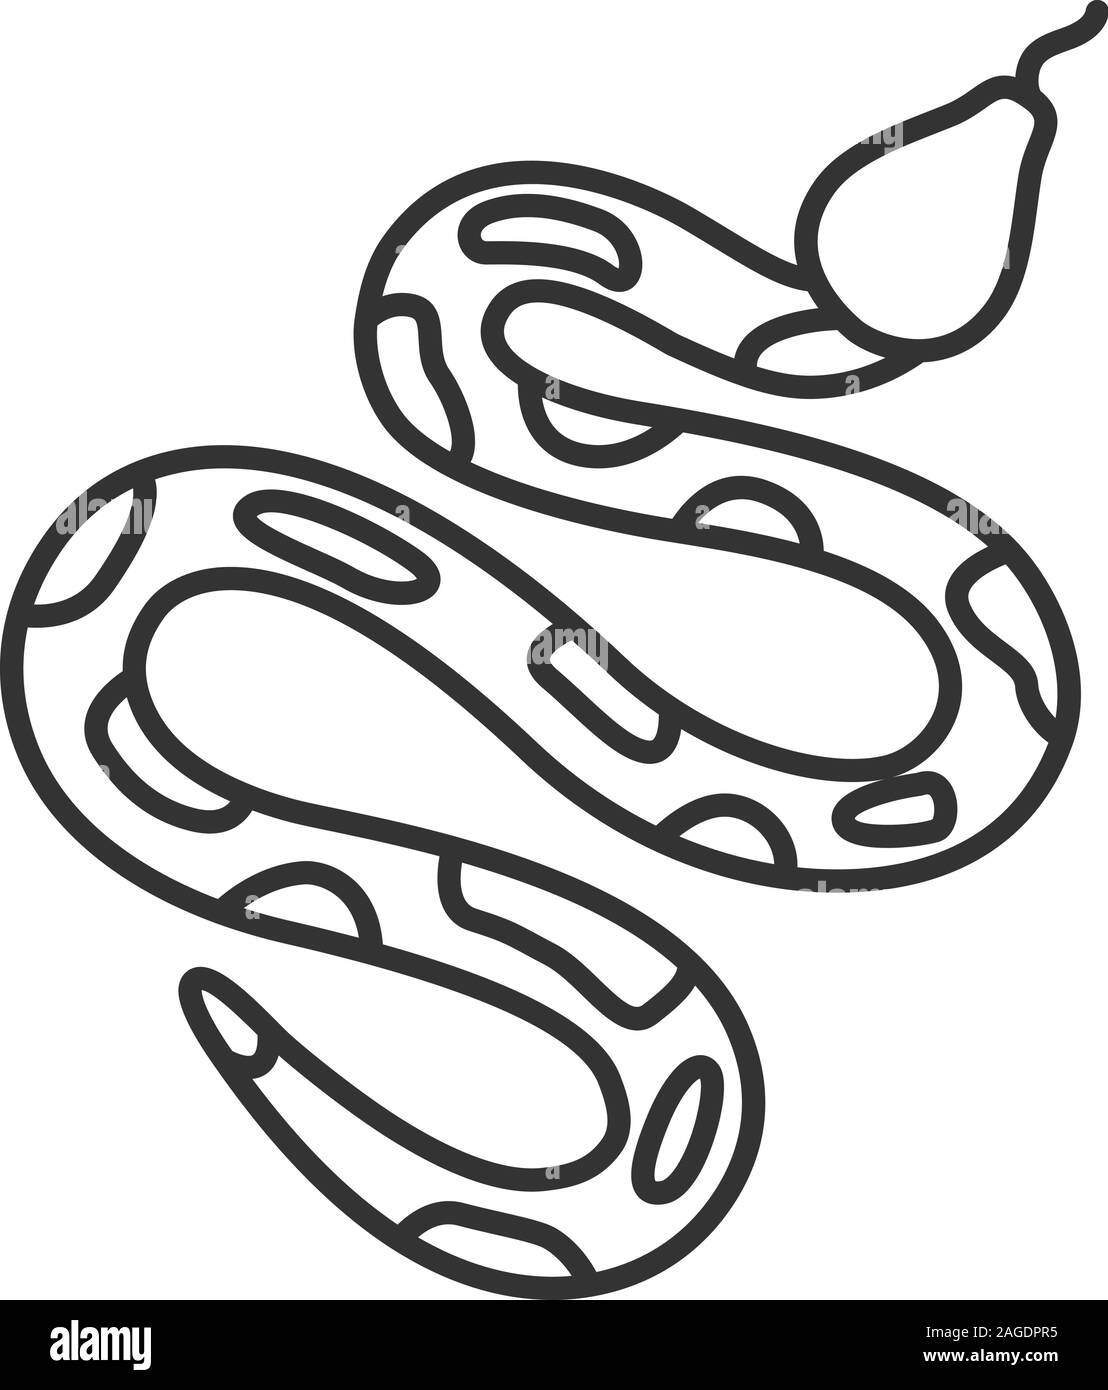 apollo symbol python